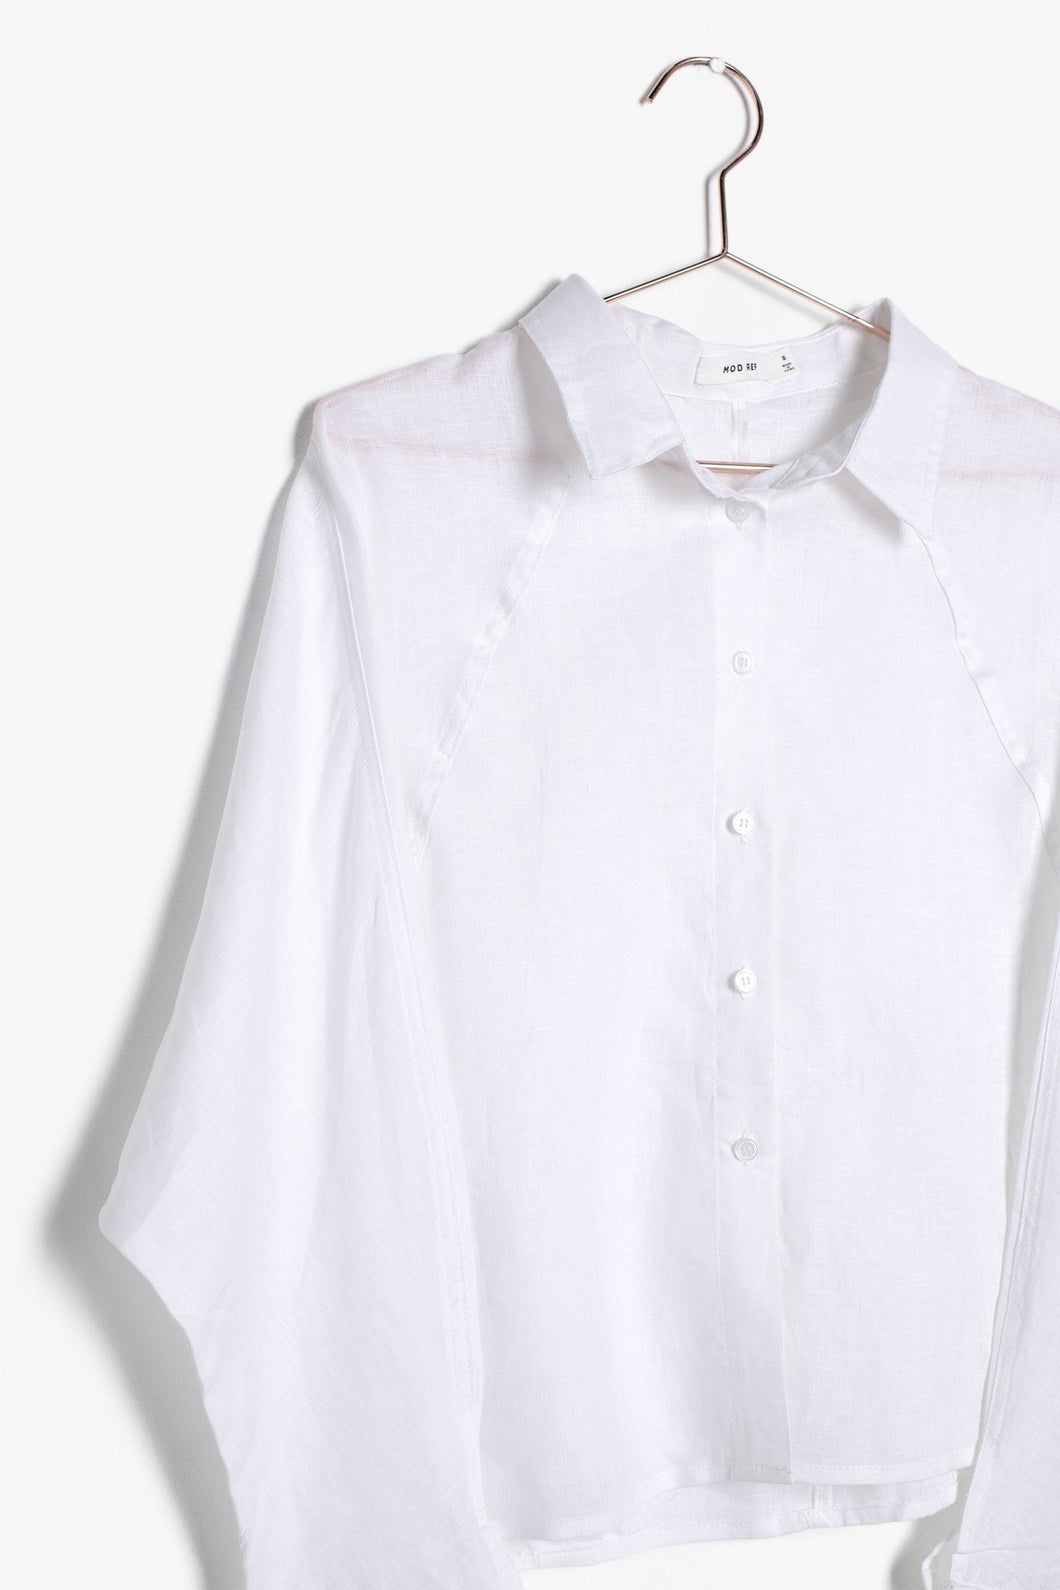 Relm Linen Shirt